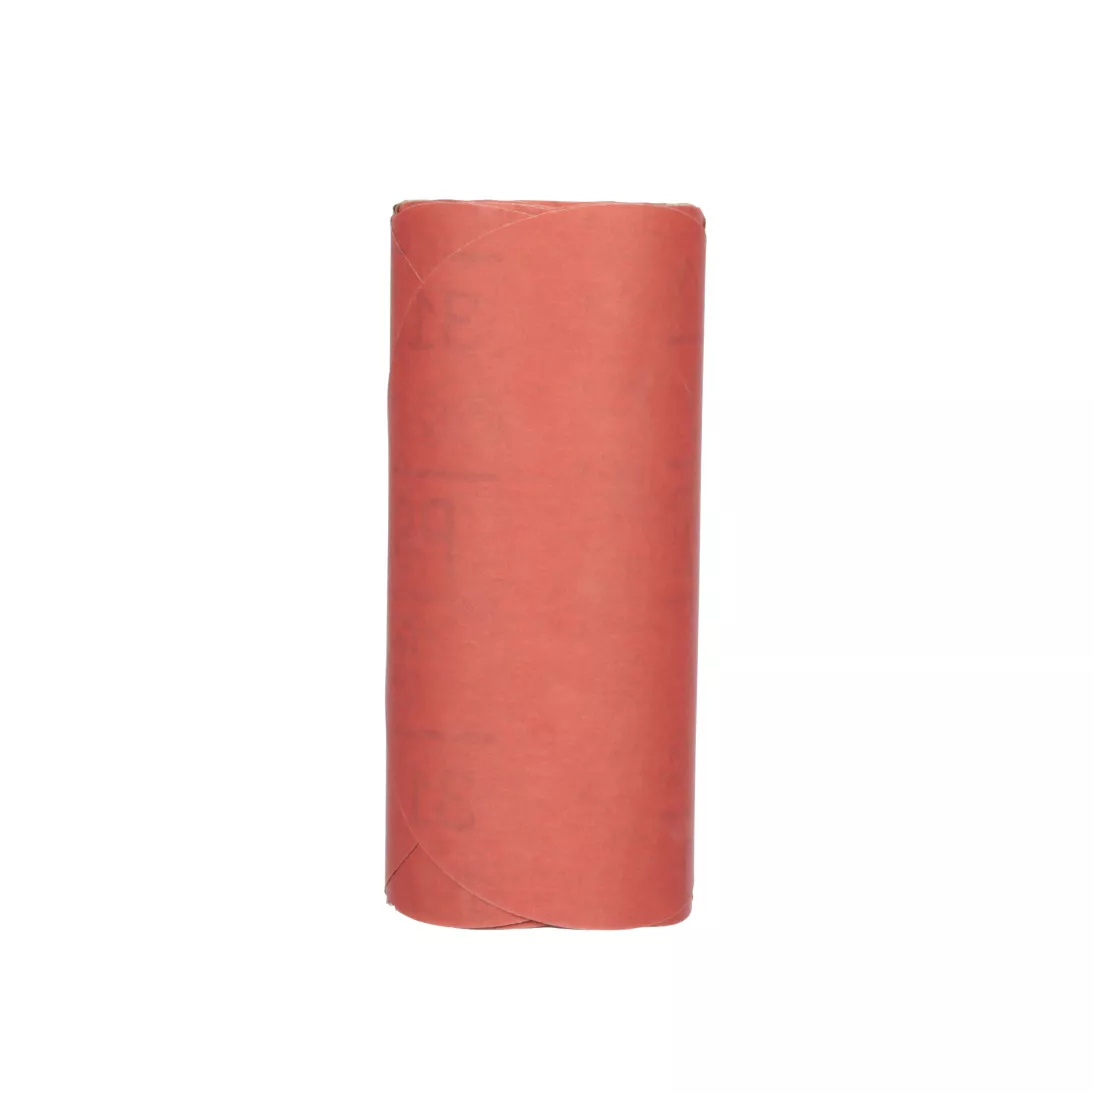 3M™ Red Abrasive Stikit™ Disc, 01105, 6 in, P800 grade, 100 discs per
roll, 6 rolls per case